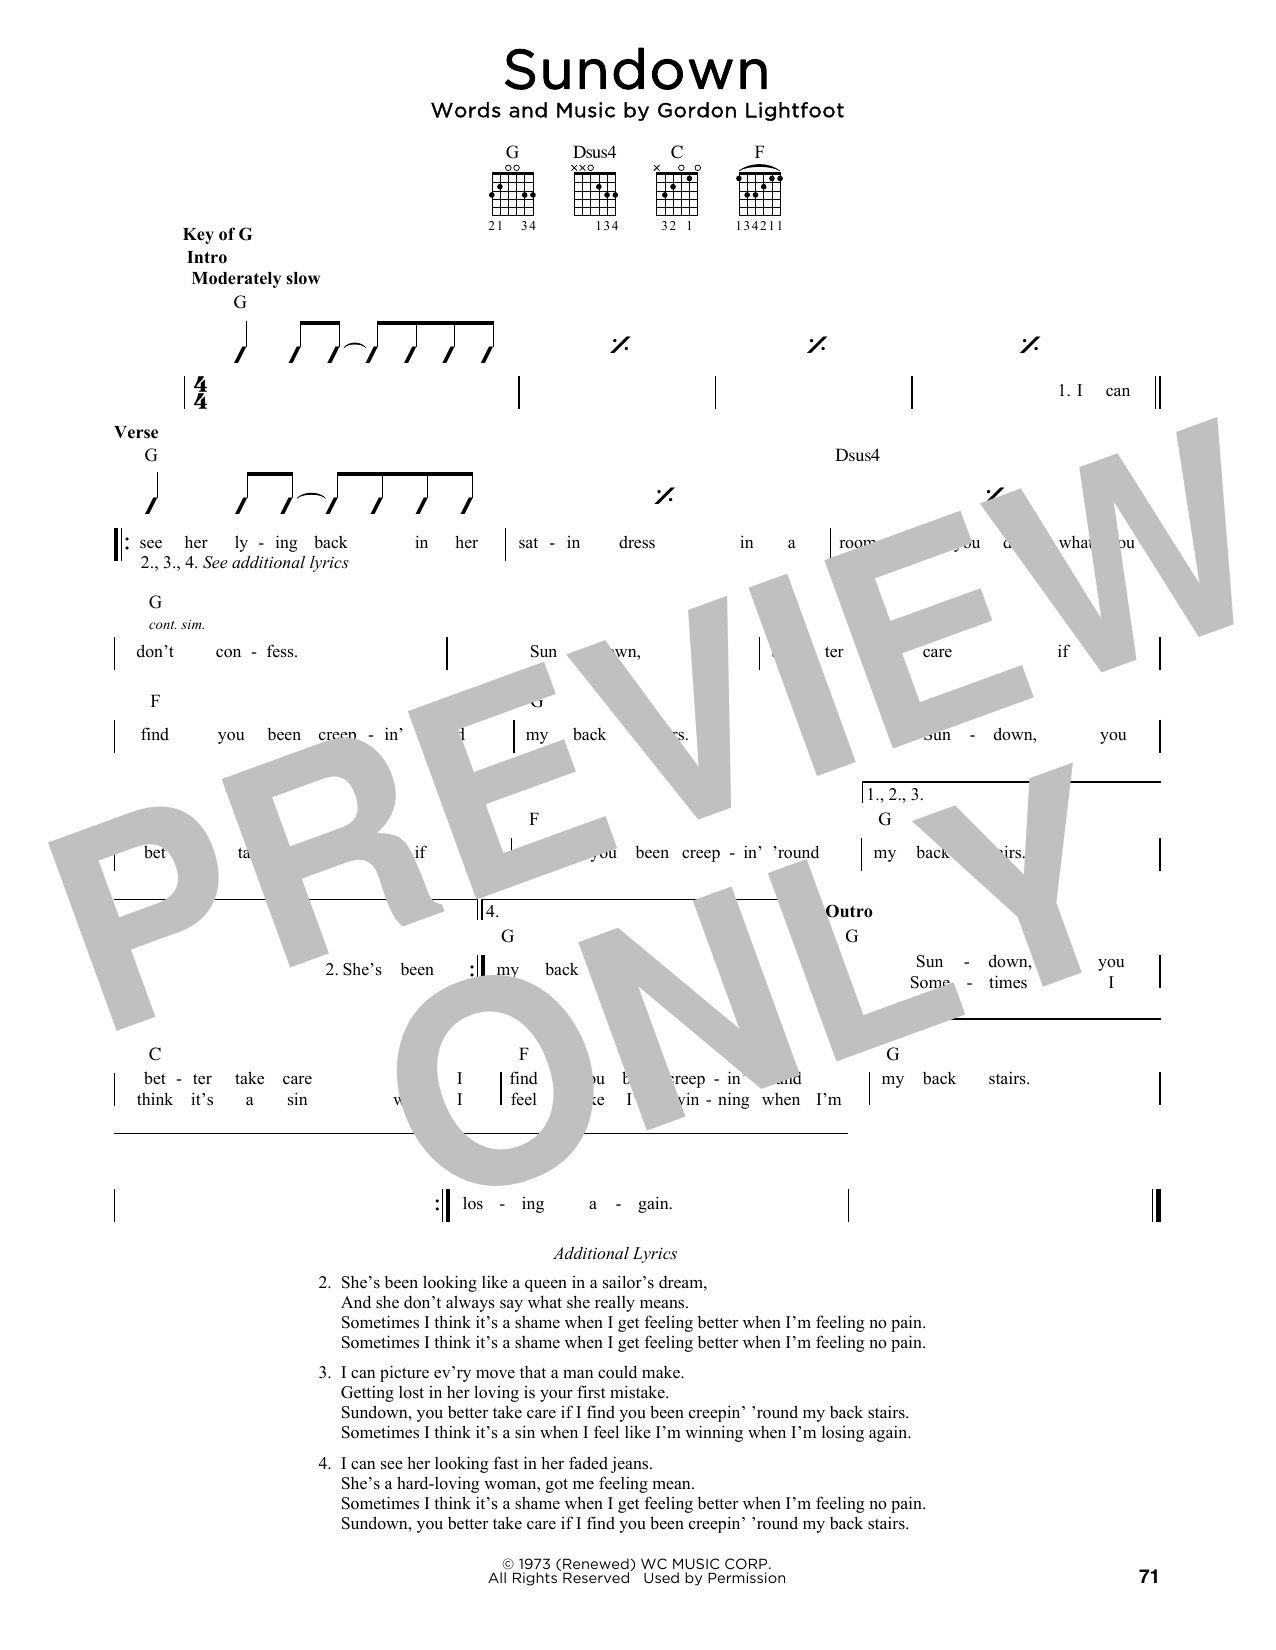 Gordon Lightfoot Sundown Sheet Music Notes & Chords for Banjo Tab - Download or Print PDF